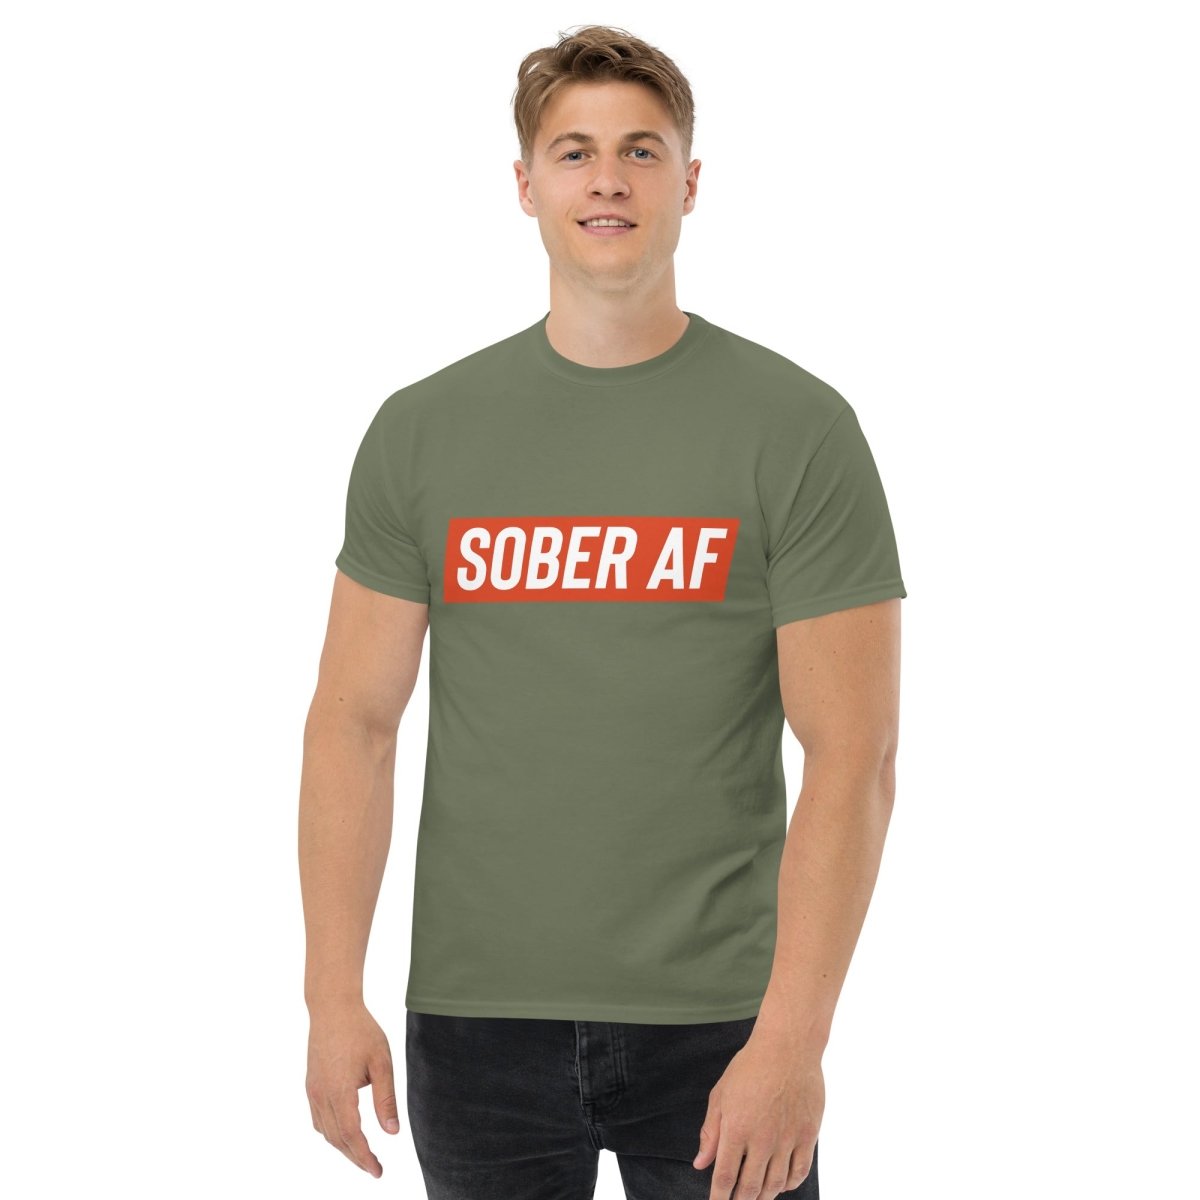 Sober AF Men's Motivation T-Shirt - Clean & Sober